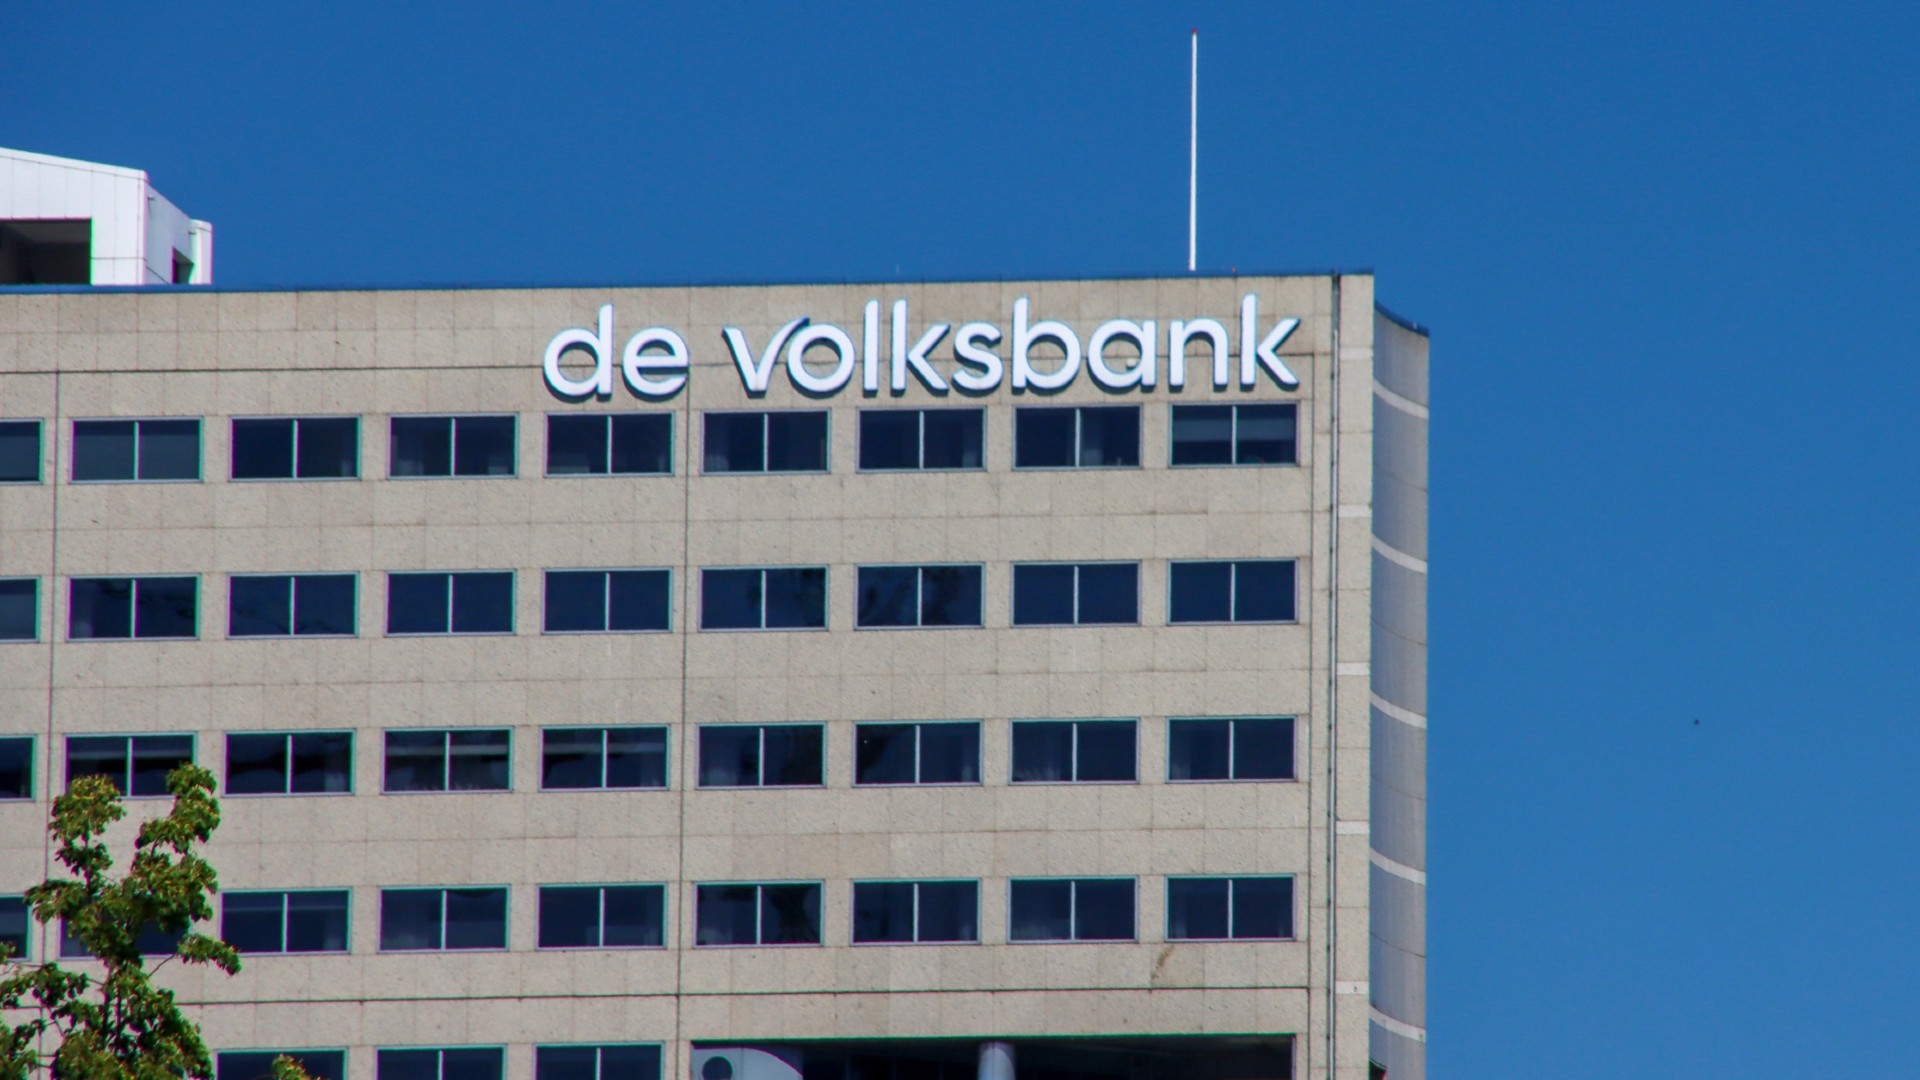 Helft Nederlanders loyaal aan bank, nooit overgestapt